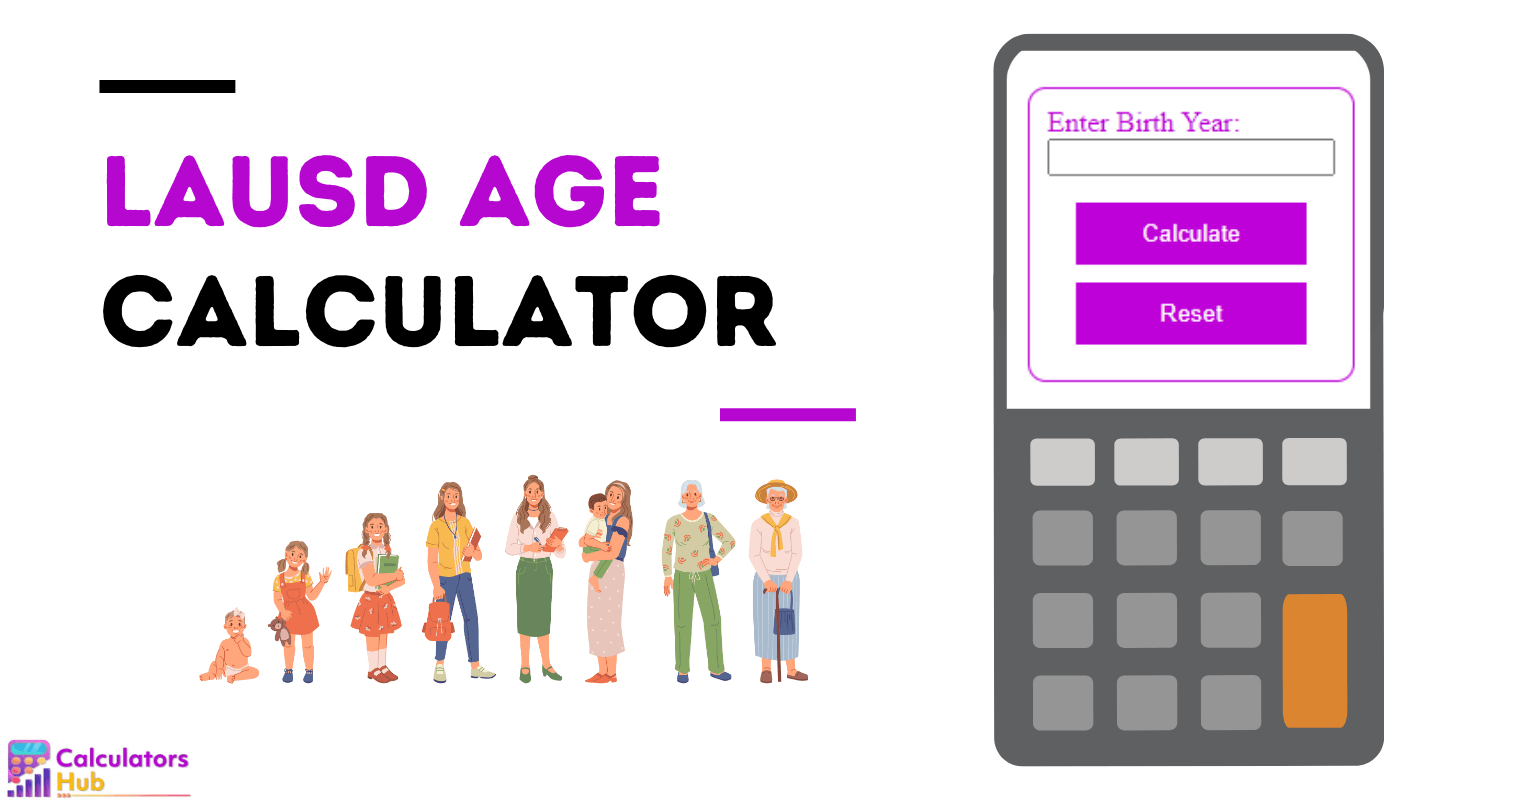 LAUSD Age Calculator